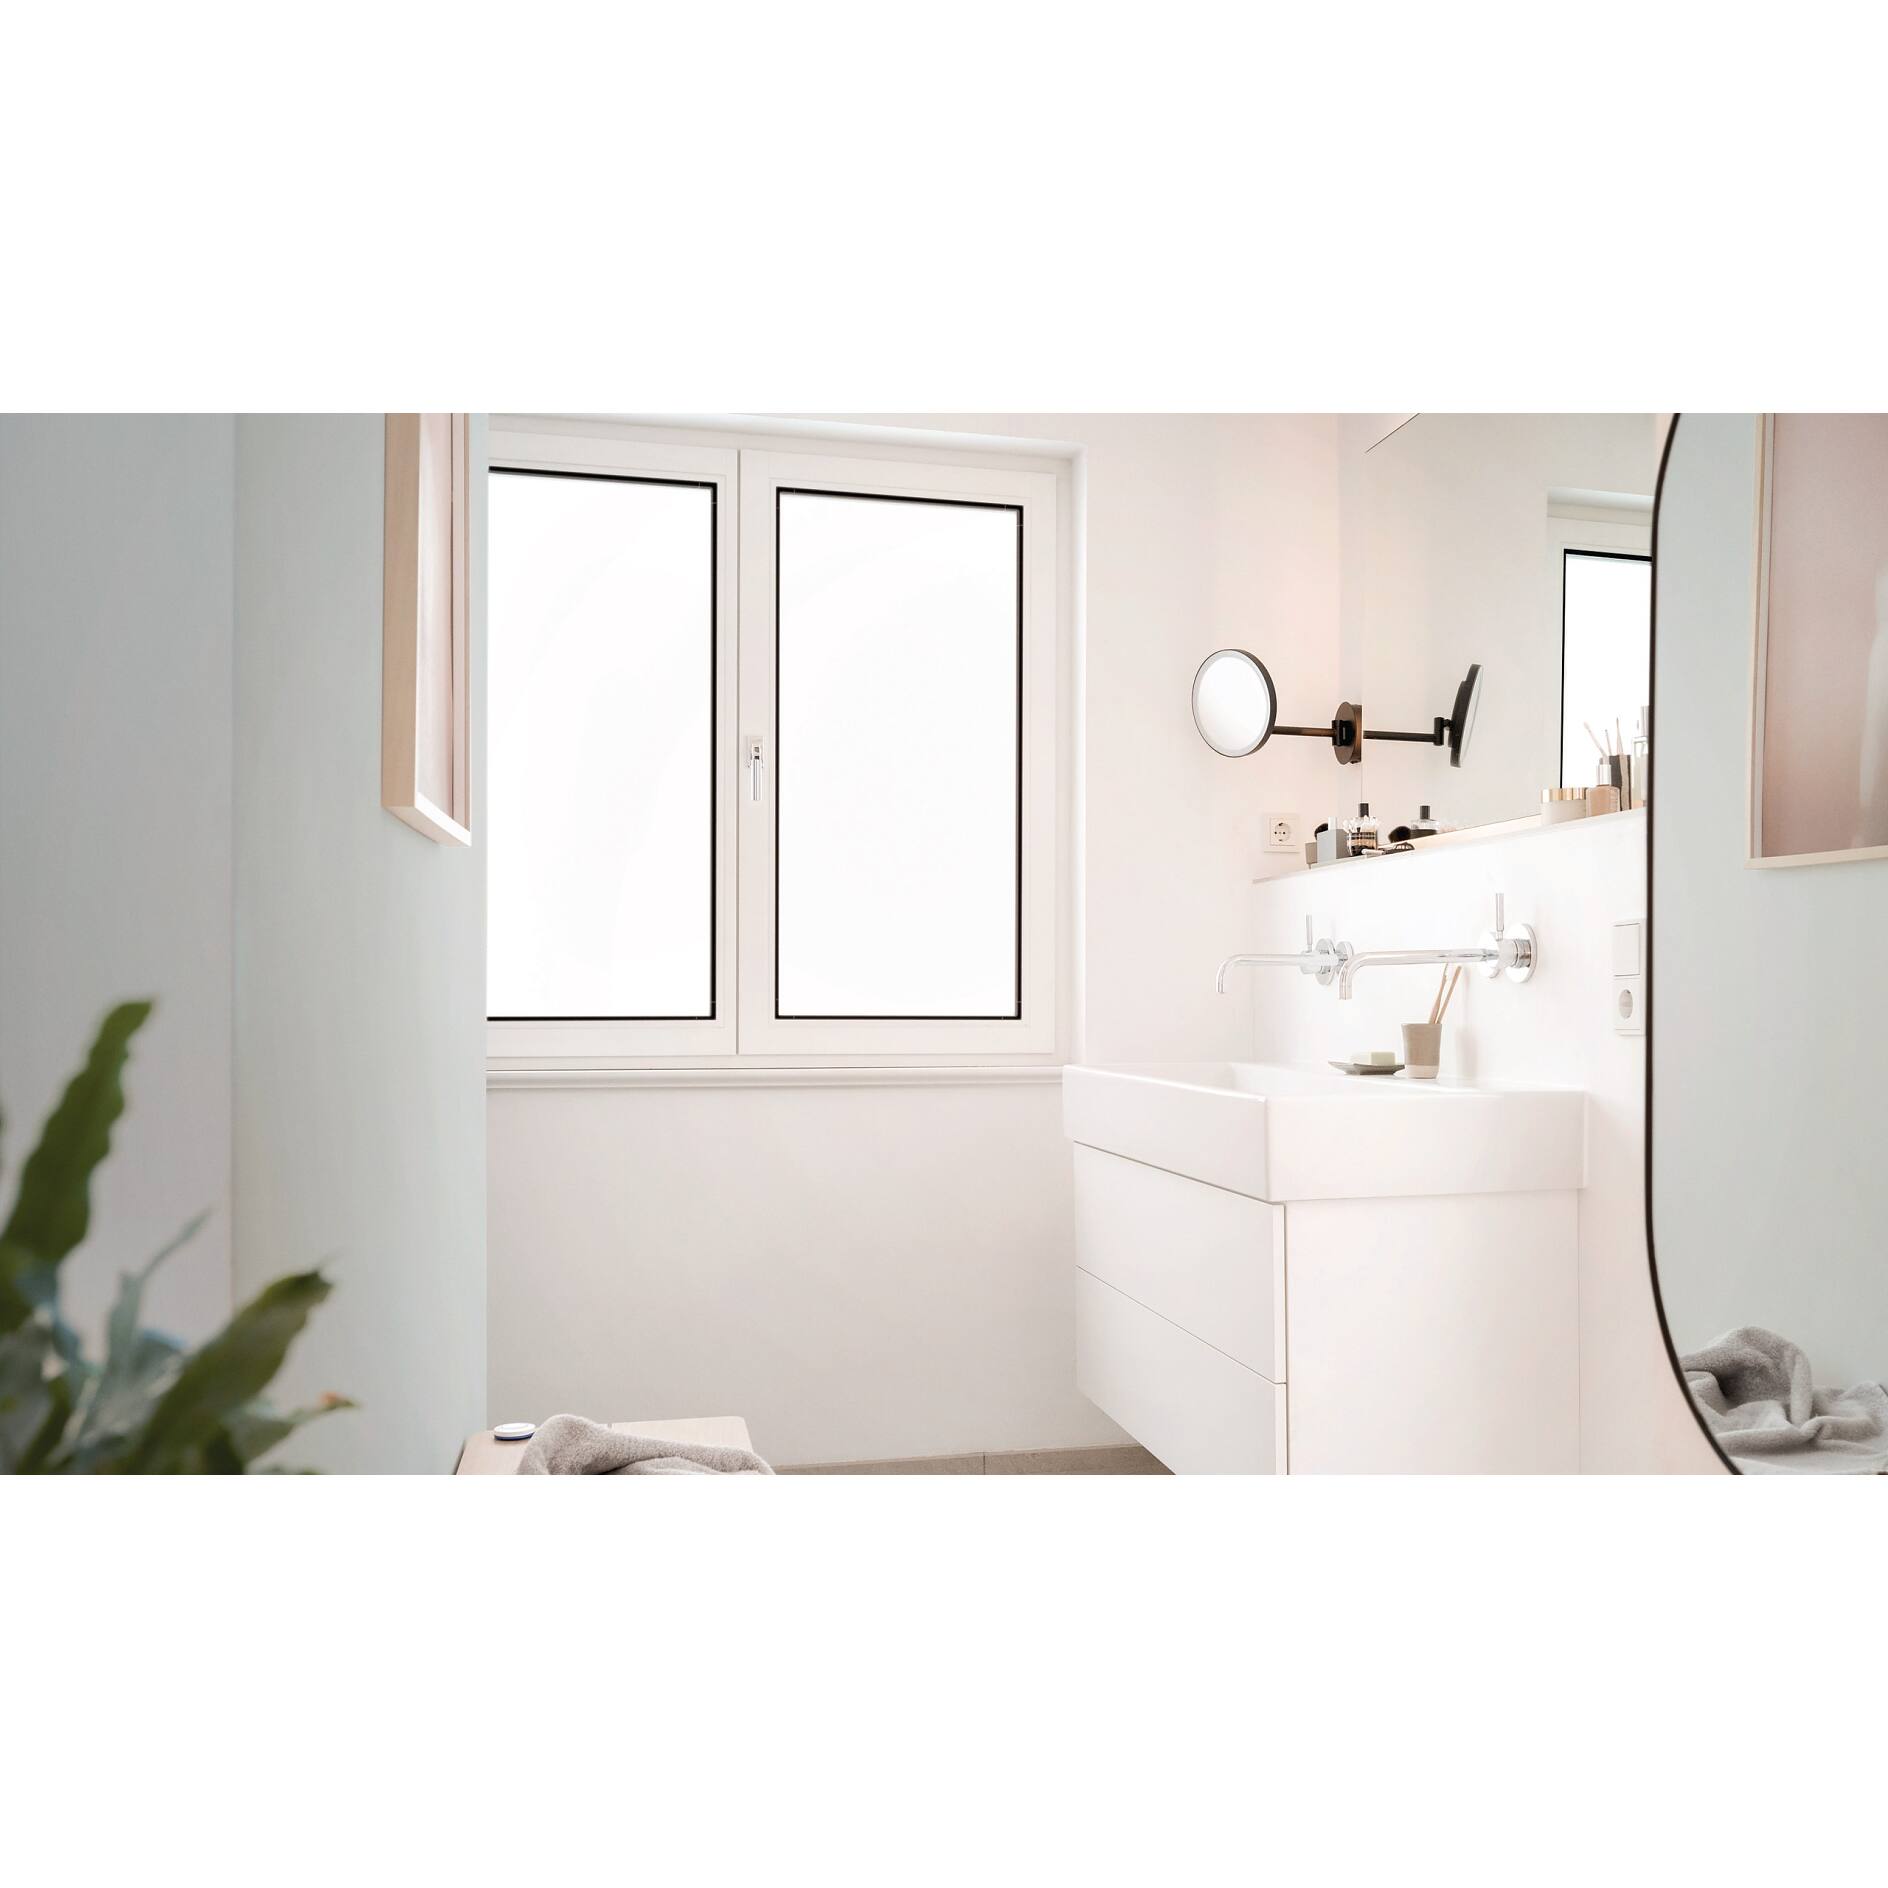 dc-fix® Fensterfolie Smoke selbstklebend Sichtschutz beidseitig blickdicht  Folie für Bad-Fenster, Küche, Glastür Milchglasfolie Sichtschutzfolie